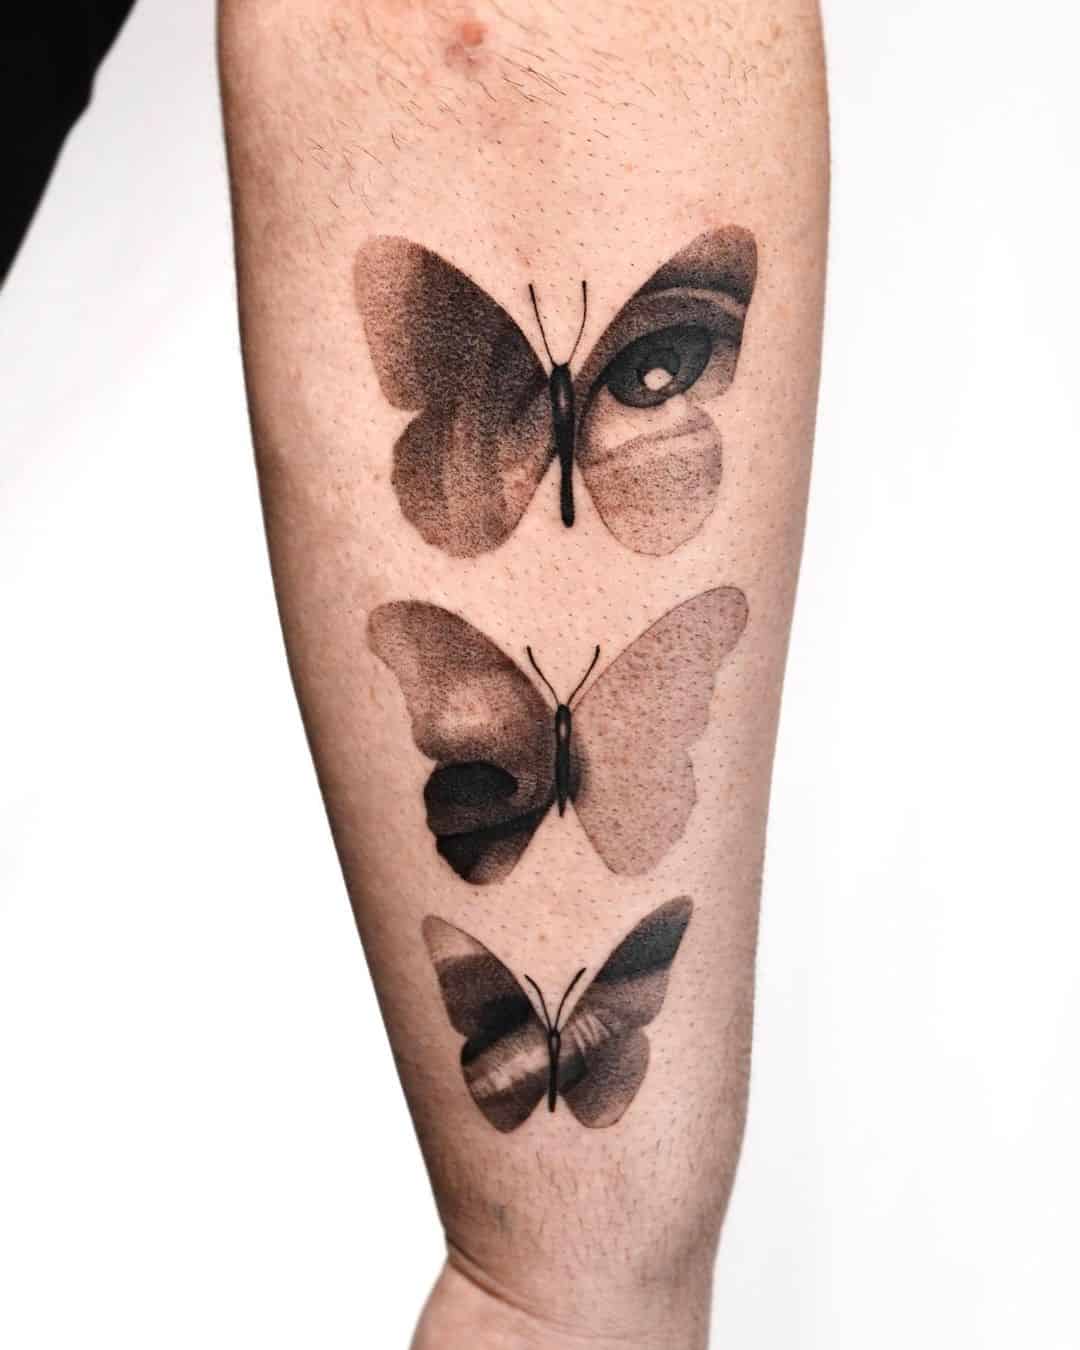 Black and grey butterfly tattoos by via saru